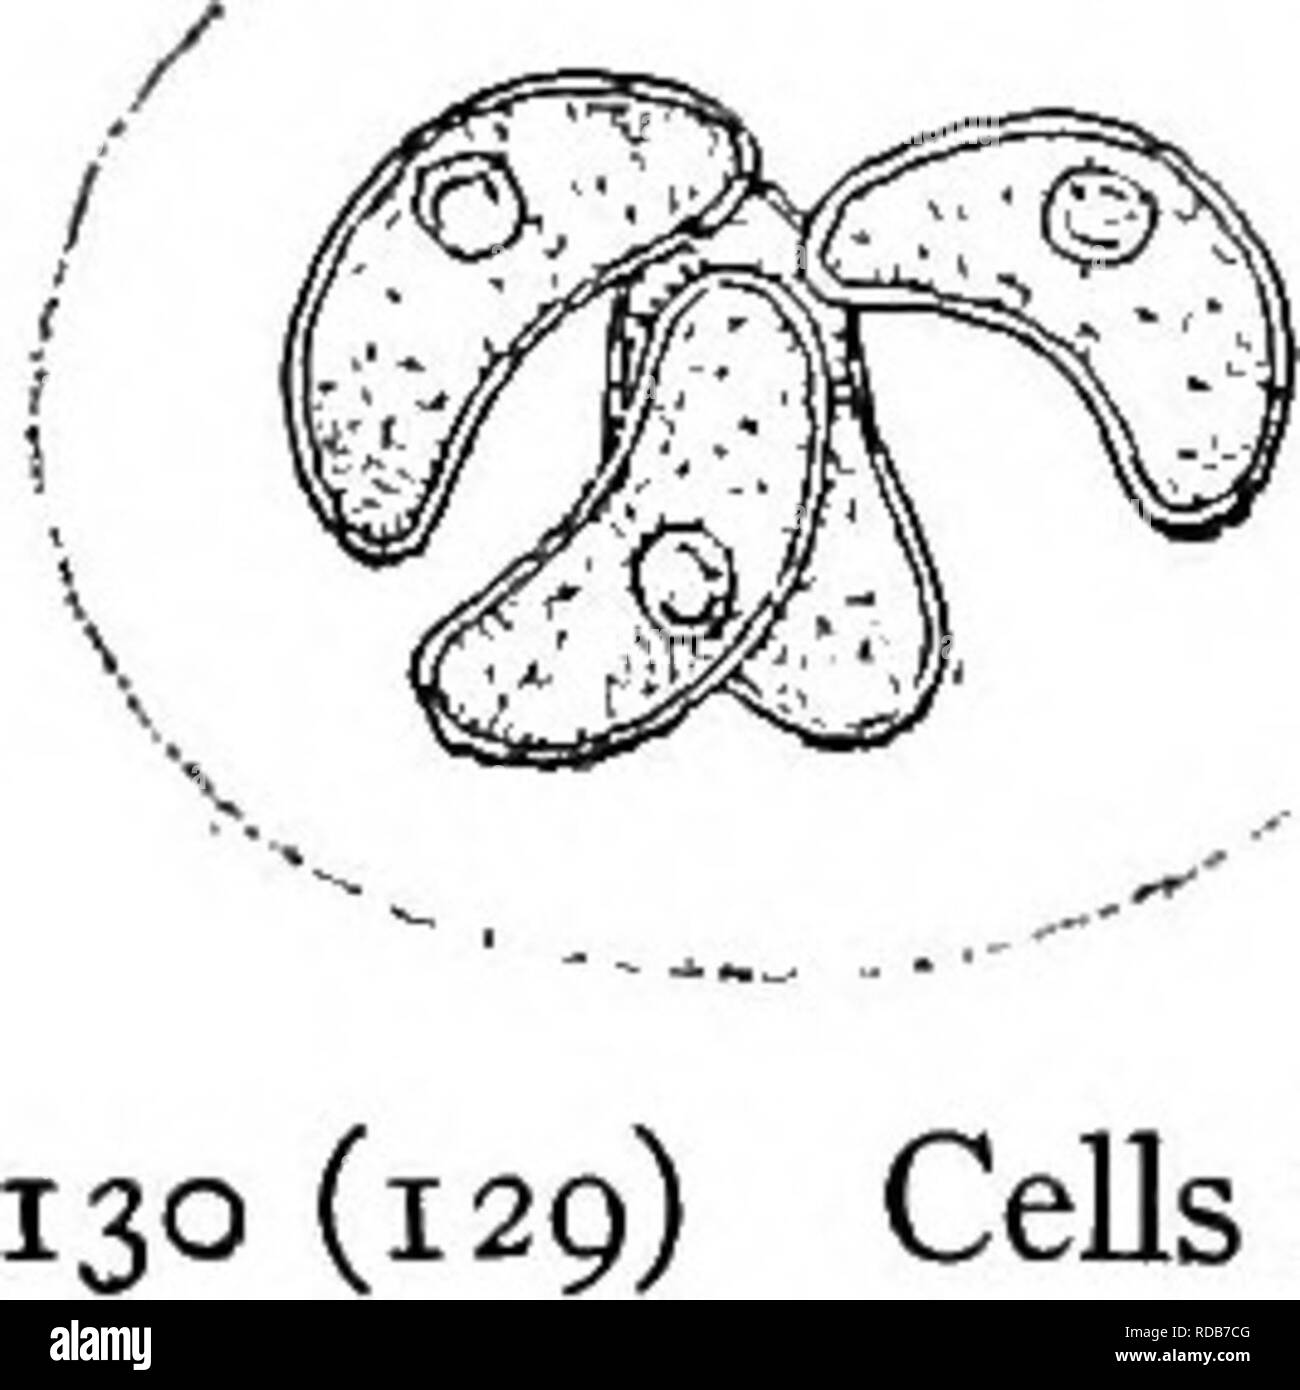 . La biologie d'eau douce. Biologie des eaux douces. La BIOLOGIE D'EAU DOUCE un peu de colonies, cubique montrant une couche gélatineuse, sombre entre les cellules Gloeotaenium Hansgirg. Cellules globuleuses ou aplatie, des colonies de deux, quatre ou huit cellules, avec de larges murs lamellaire. La reproduction par l'aplanospores. Fig. 171. Gloeotaenium loitelsbergerianum TUsLHagixg. X 220. (Après Transeau.)(128) 110 127 colonies la forme des cellules individuelles 129 129 (130 cellules), réniforme colonie de la même forme ou ovale. Nephrocytium Nageli. Seul les cellules ou en grappes, comme dans Sphaerocysiis, mais de forme réniforme. Nephrocytium resemb Banque D'Images